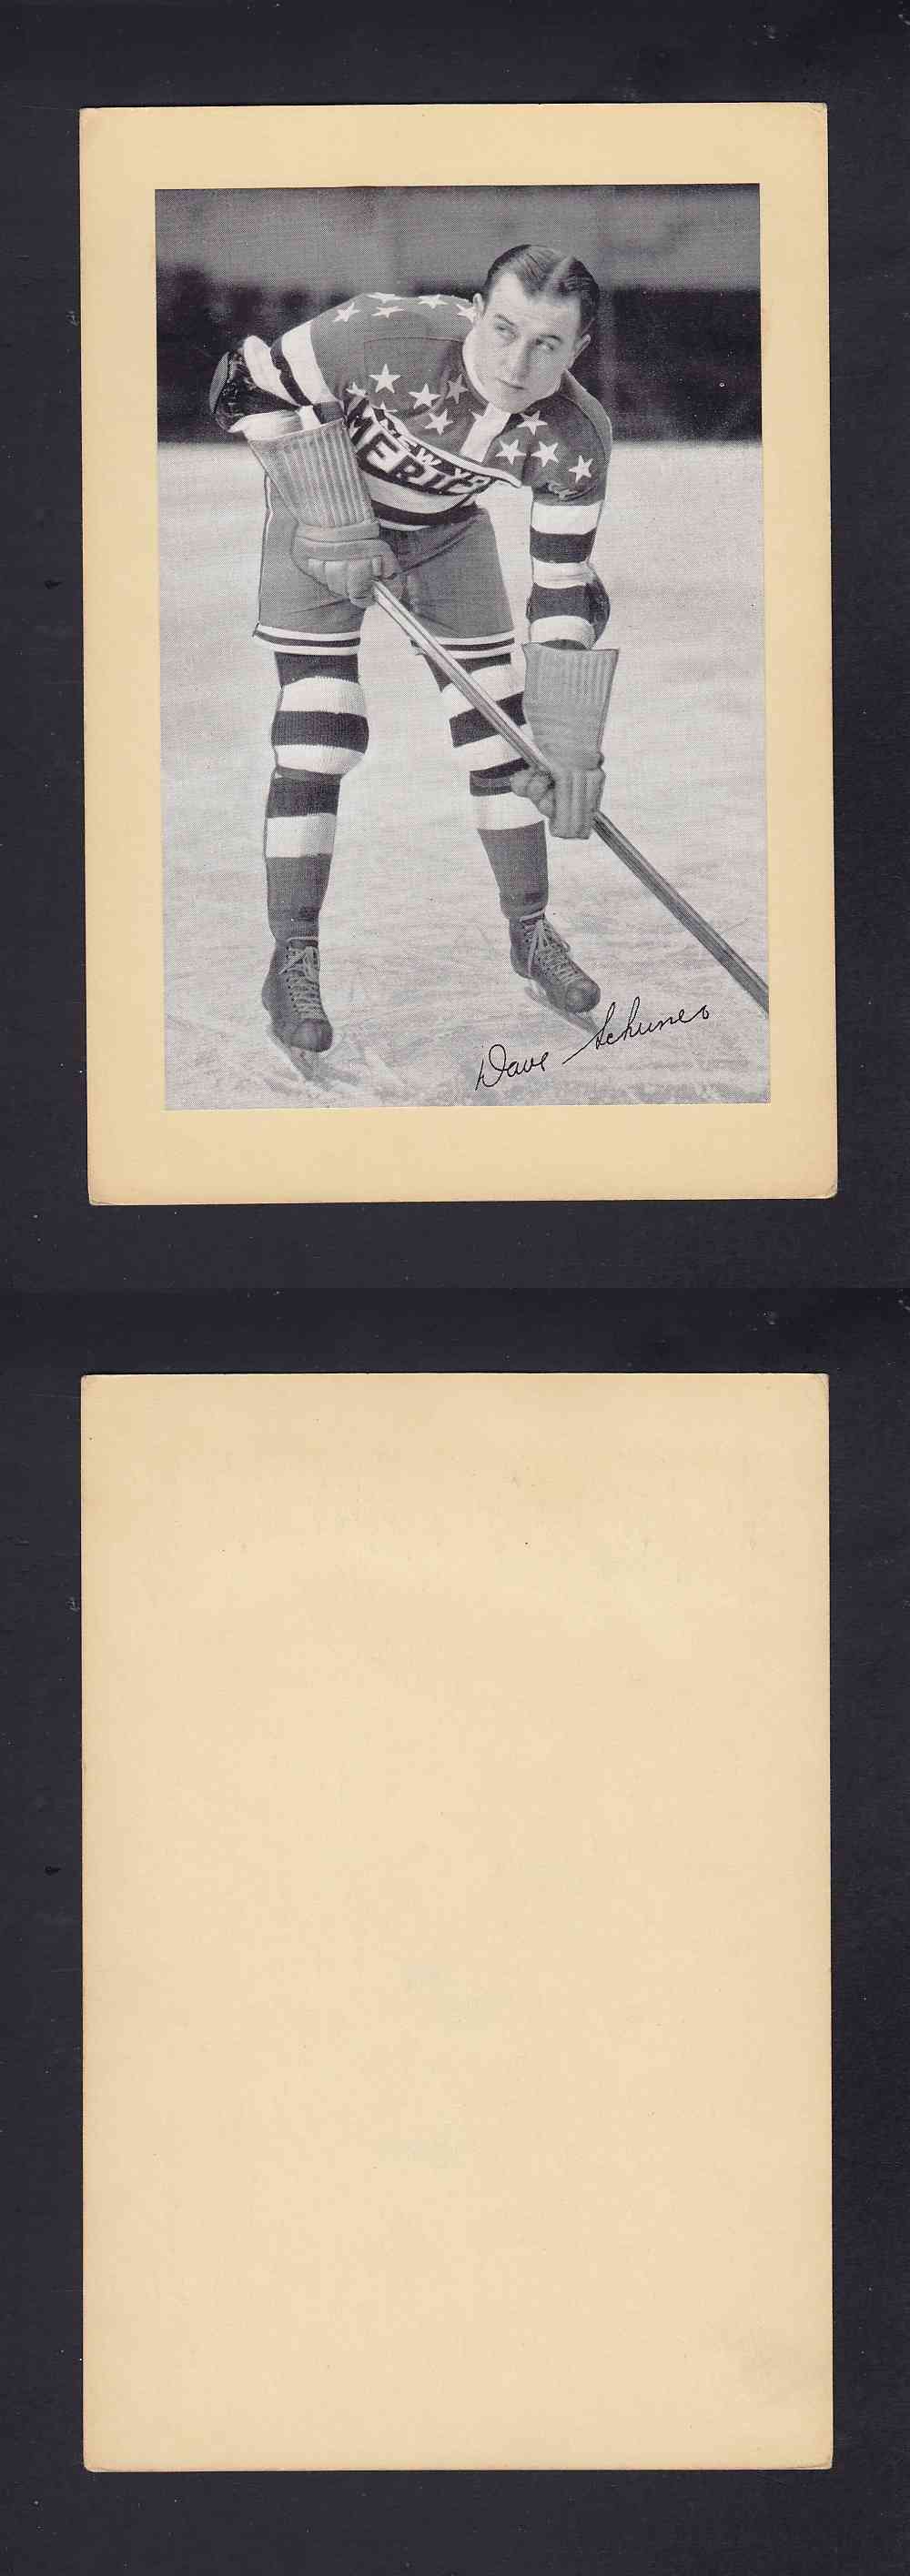 1934-43 BEEHIVE PHOTO GR.1 D. SCHRINER photo